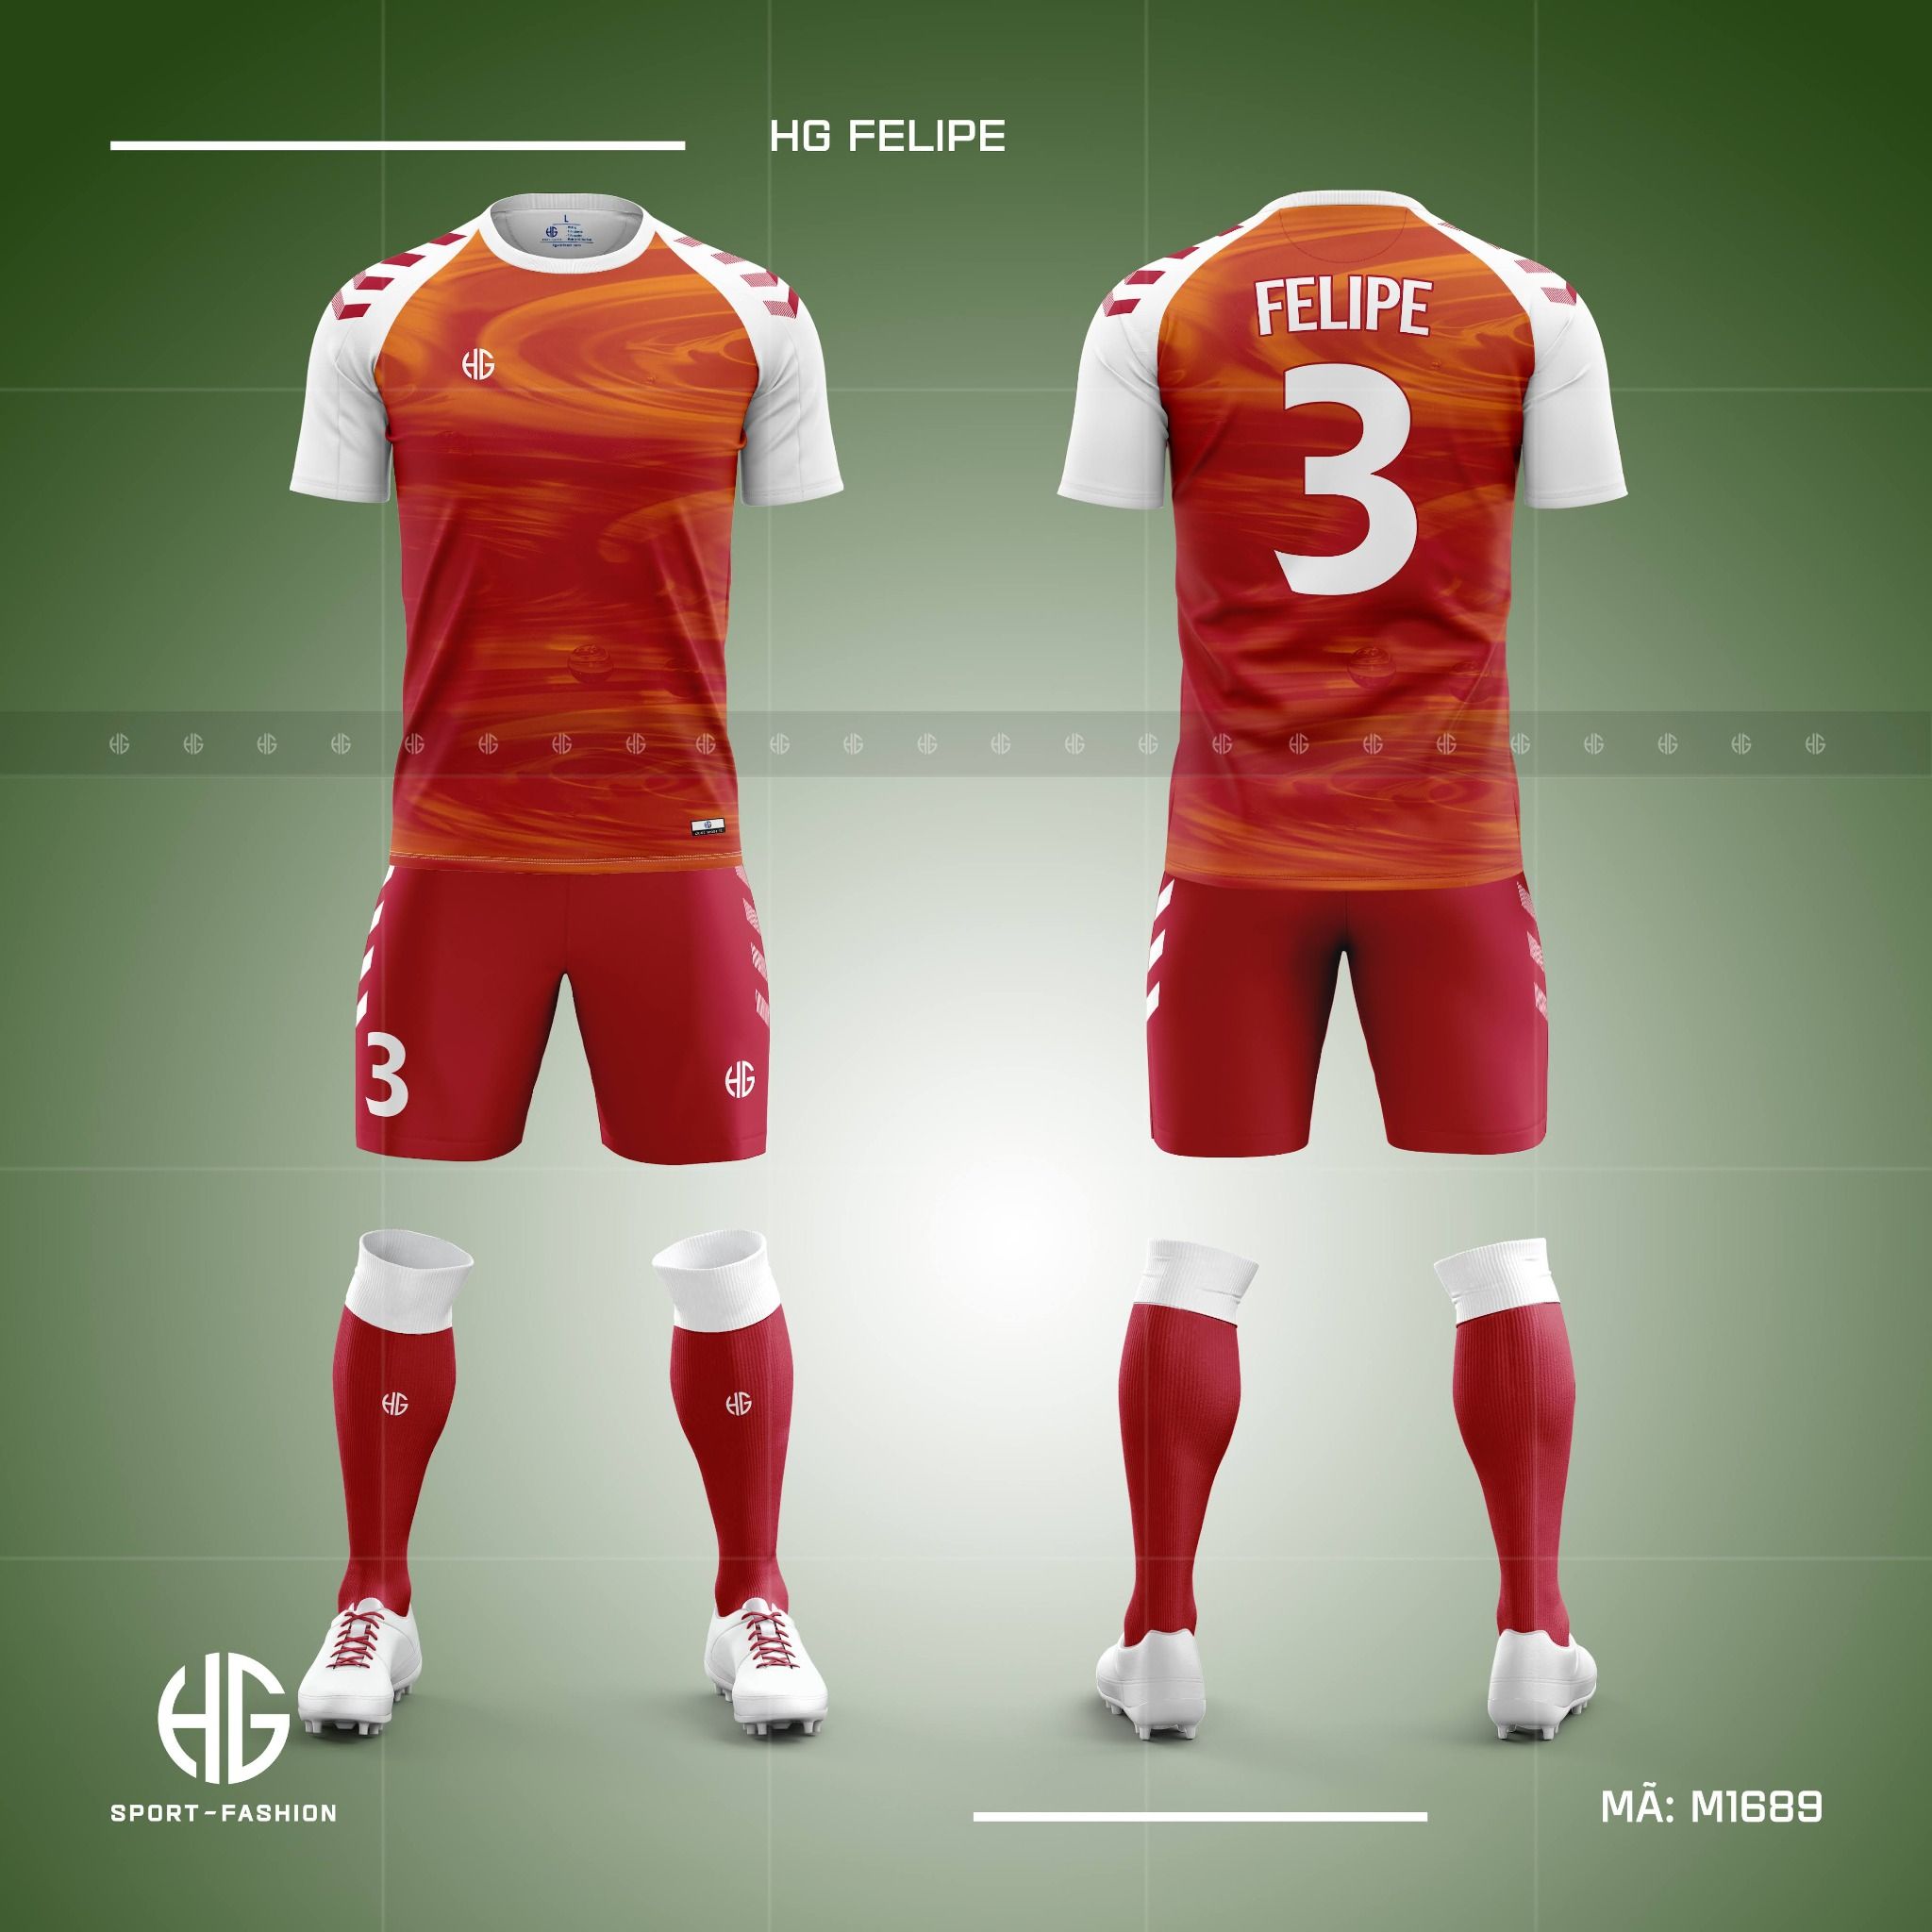  Áo bóng đá thiết kế M1689. HG Felipe 